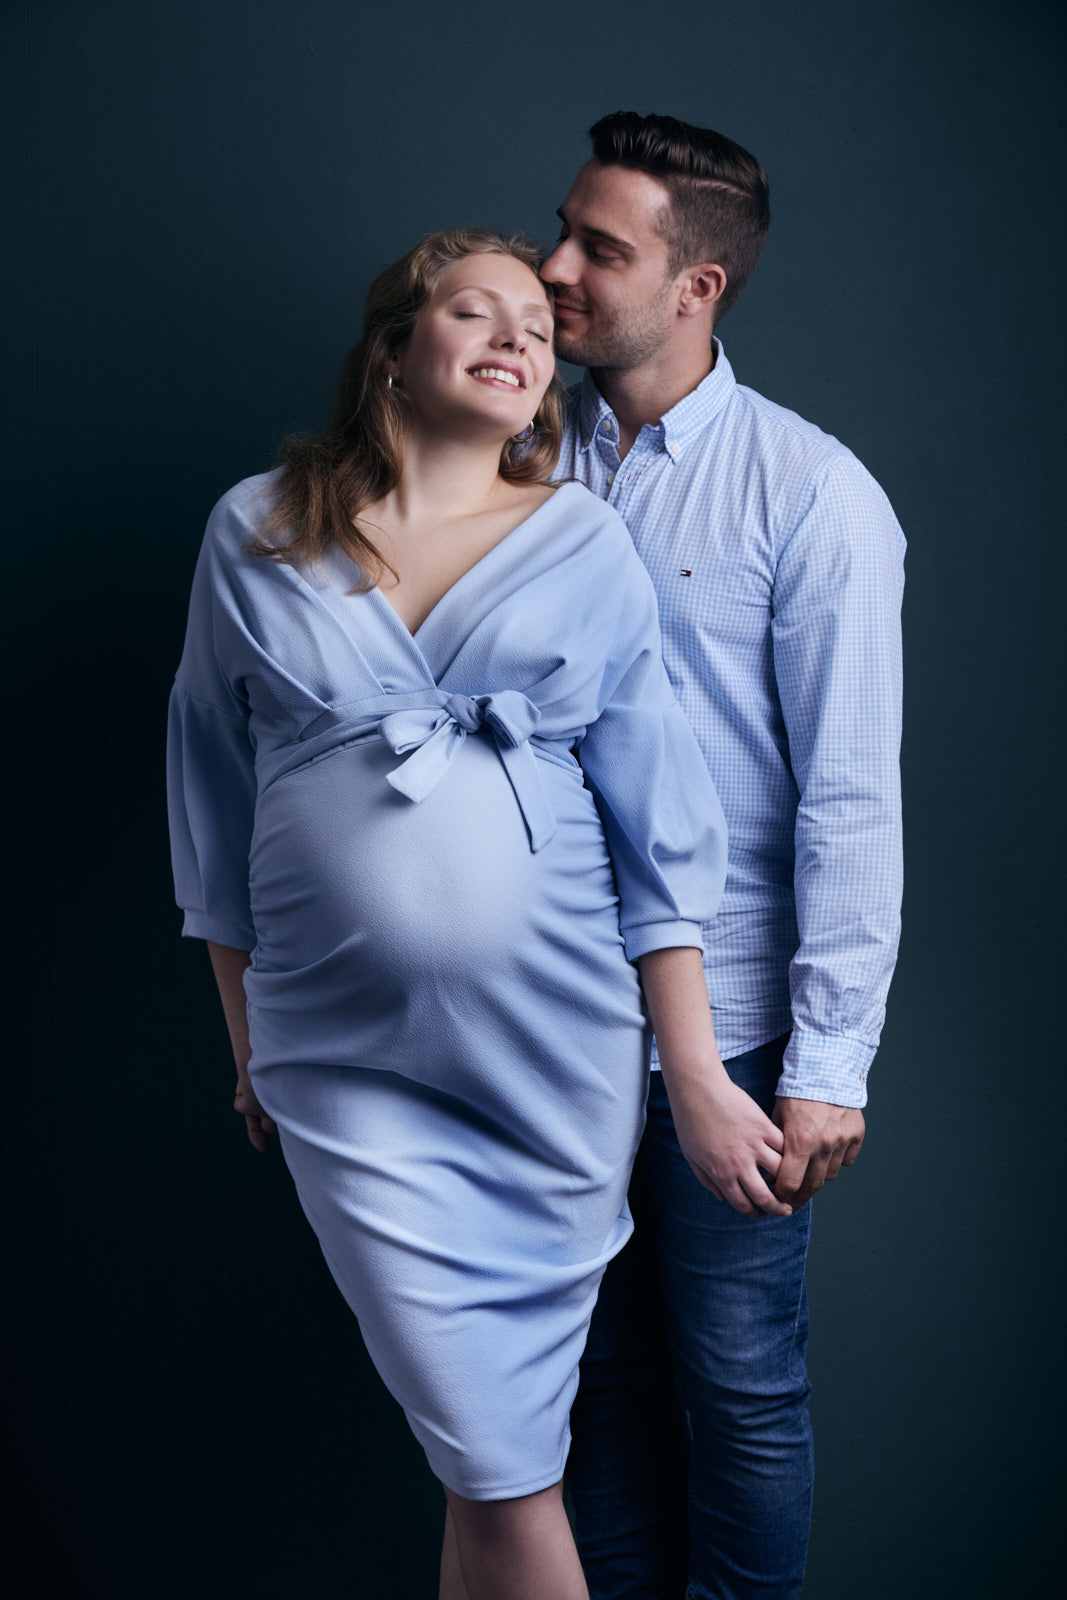 Fotoshooting eines werdenden Elternpaares. Die schwangere, glücklich, lächelnde junge Frau wird von Ihrem Mann auf die Schläfe geküsst. Sie trägt ein elegantes hellblaues Kleid und er ein passendes Hemd.